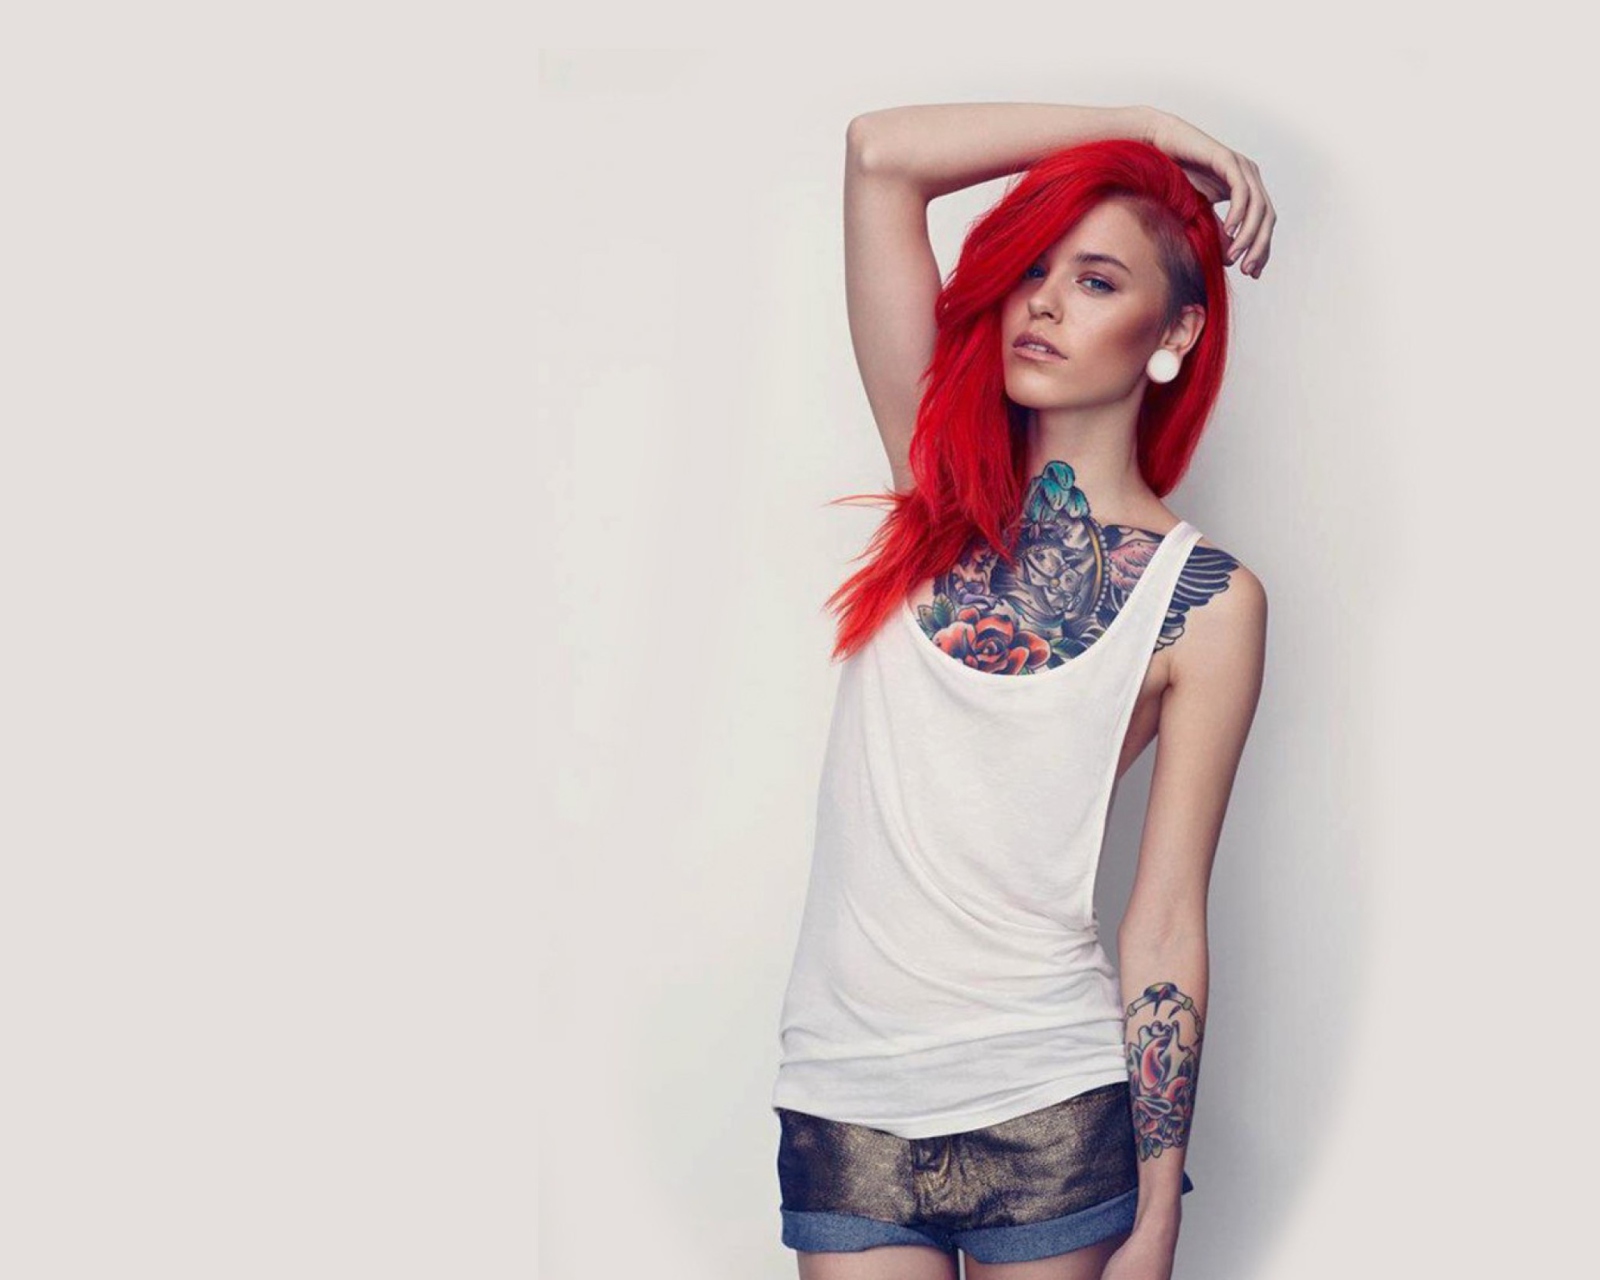 Das Beautiful Tattooed Redhead Wallpaper 1600x1280